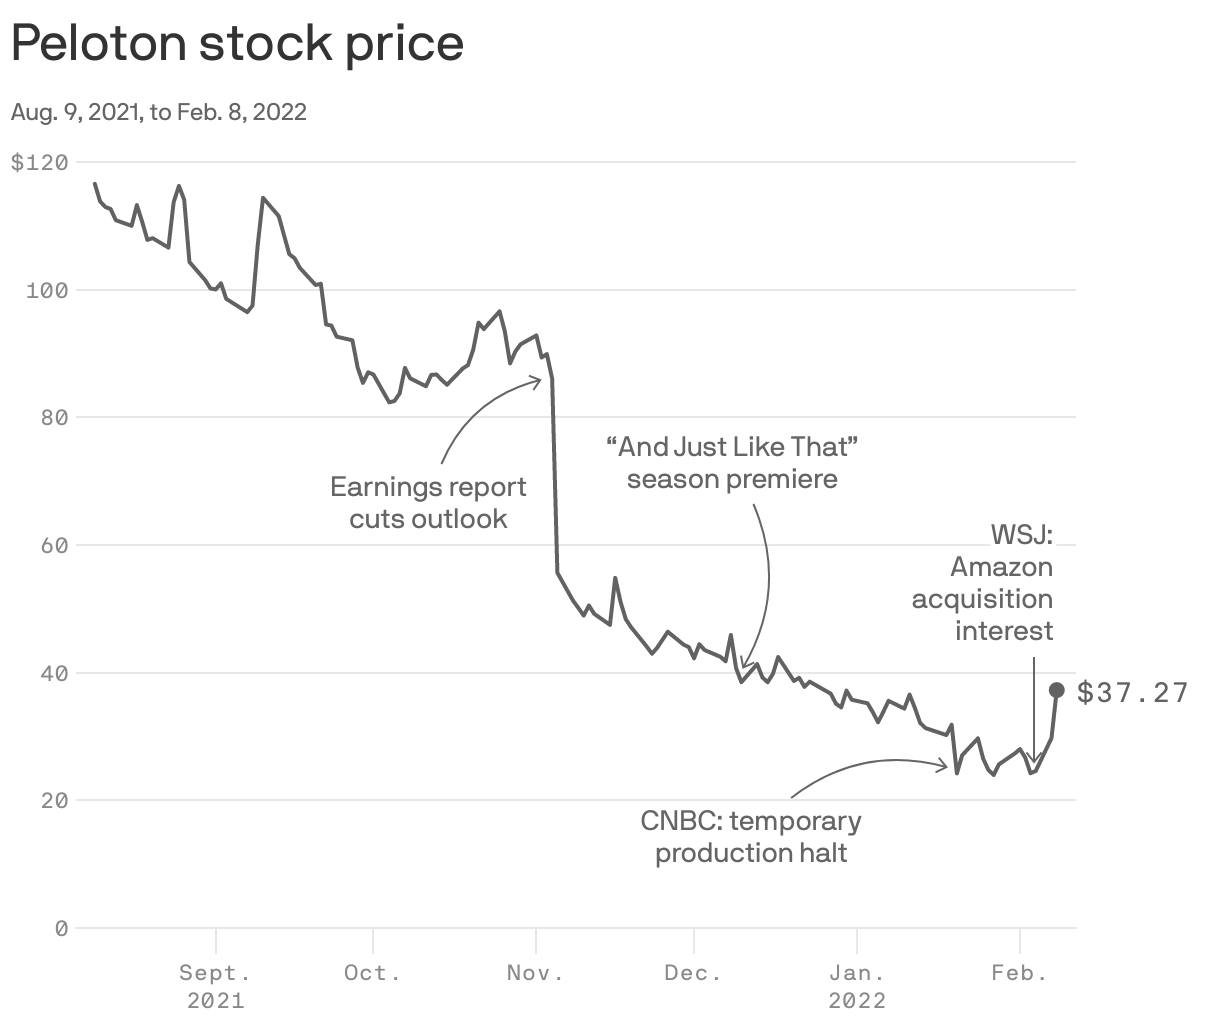 Peloton stock price